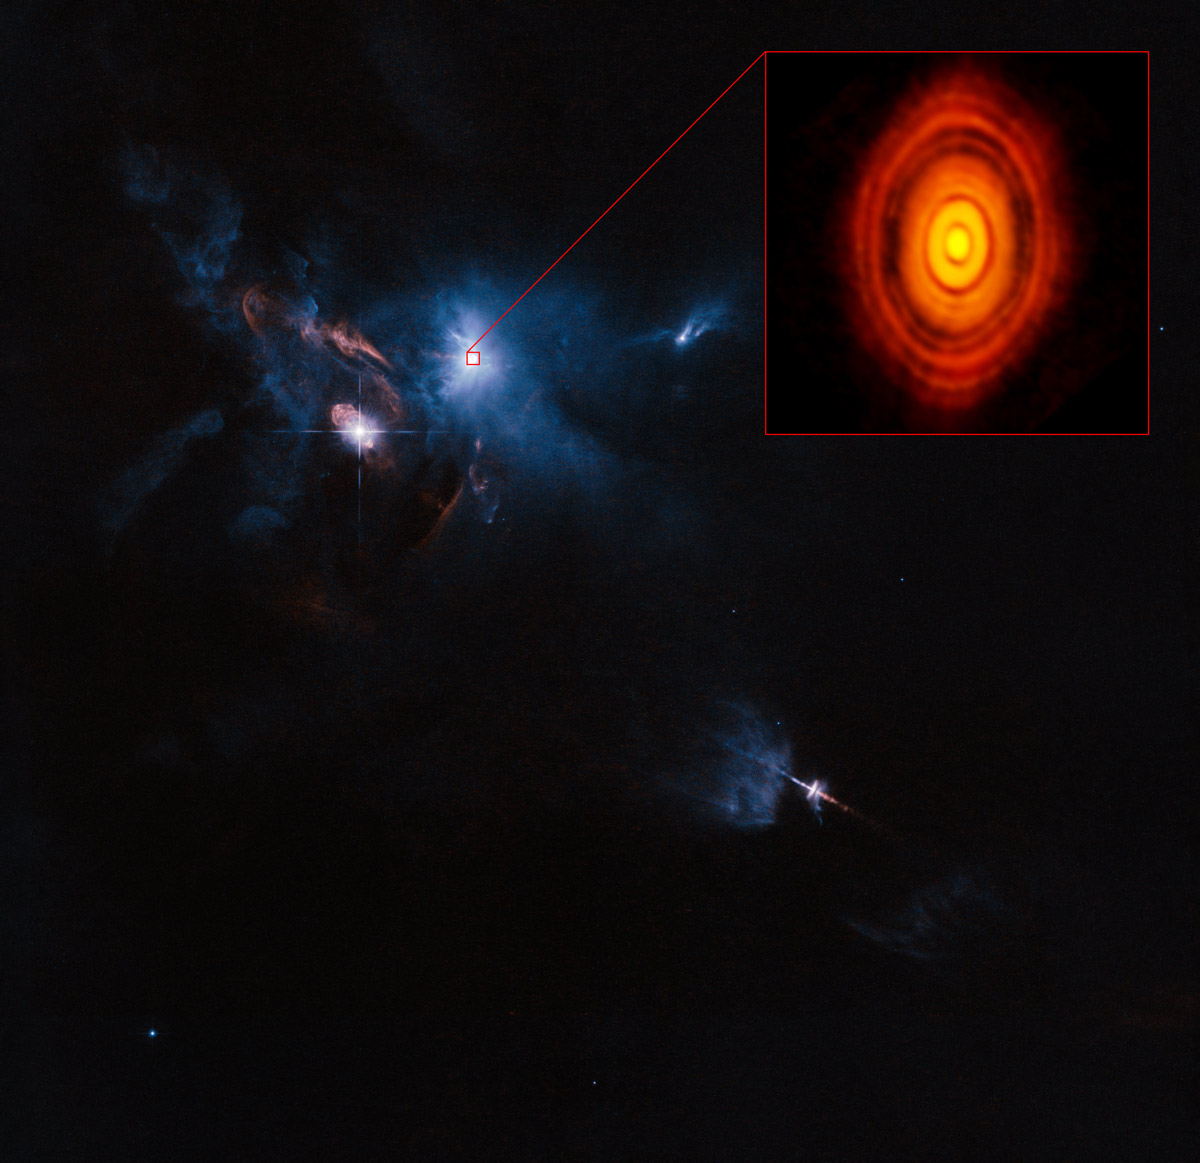 Esta es la imagen más nítida jamás obtenida por ALMA, aún más precisa que las que se toman normalmente en luz visible con el telescopio espacial Hubble de NASA/ESA. En ella vemos el disco protoplanetario que rodea a la joven estrella HL Tauri. Estas nuevas observaciones de ALMA revelan subestructuras dentro del disco que nunca antes se habían visto, e incluso muestran las posibles posiciones de los planetas formándose en las manchas oscuras dentro del sistema. Crédito: ALMA (ESO/NAOJ/NRAO)